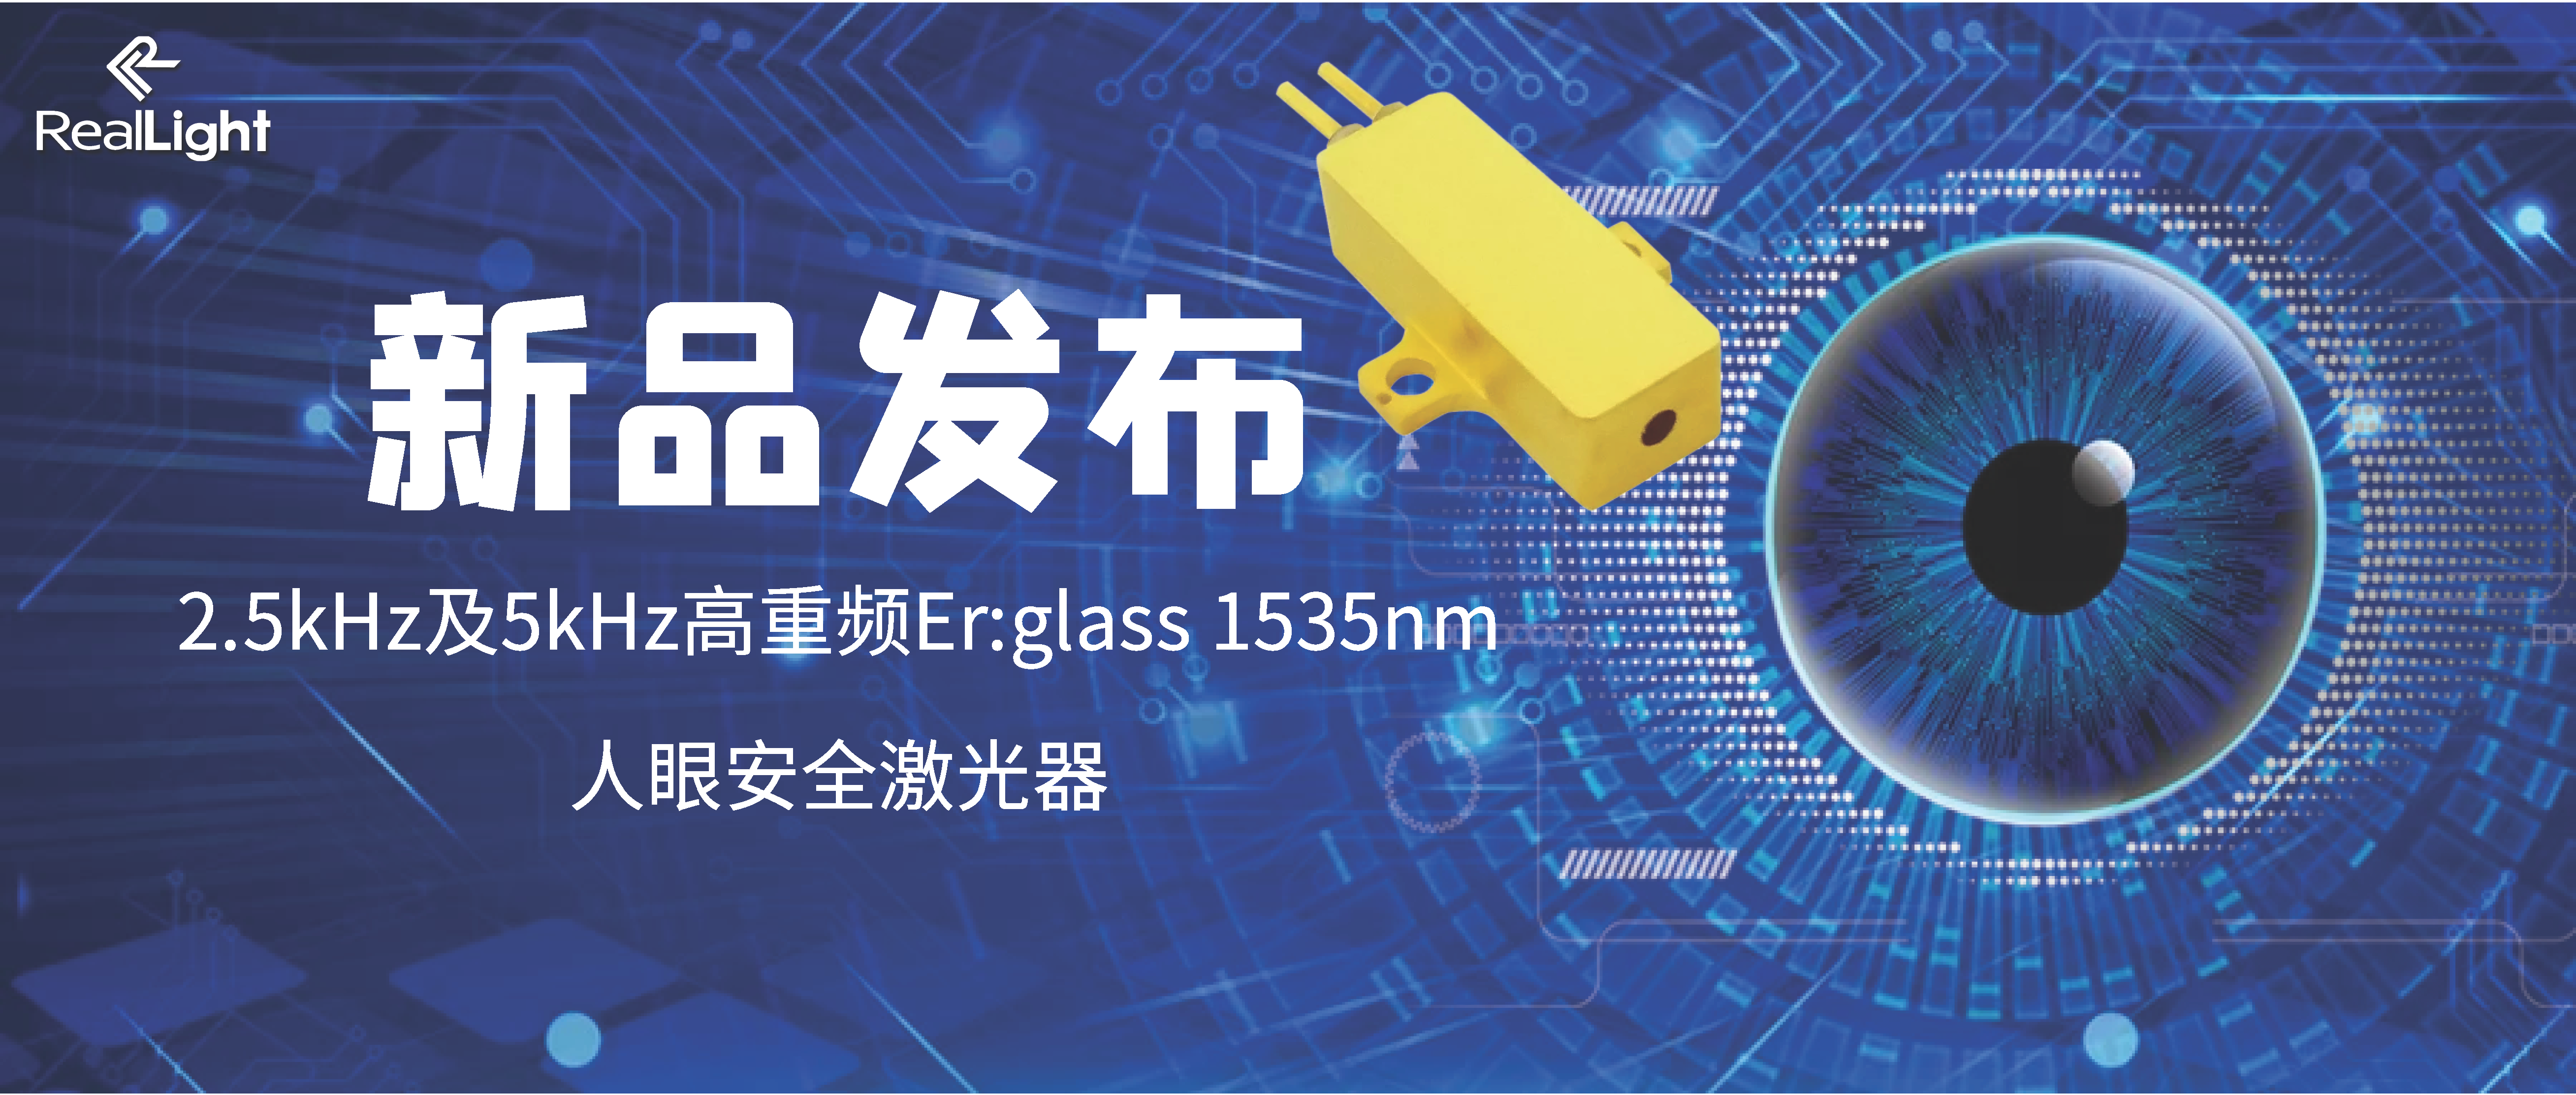 新品发布：2.5kHz及5kHz高重频Er:glass 1535nm人眼安全激光器